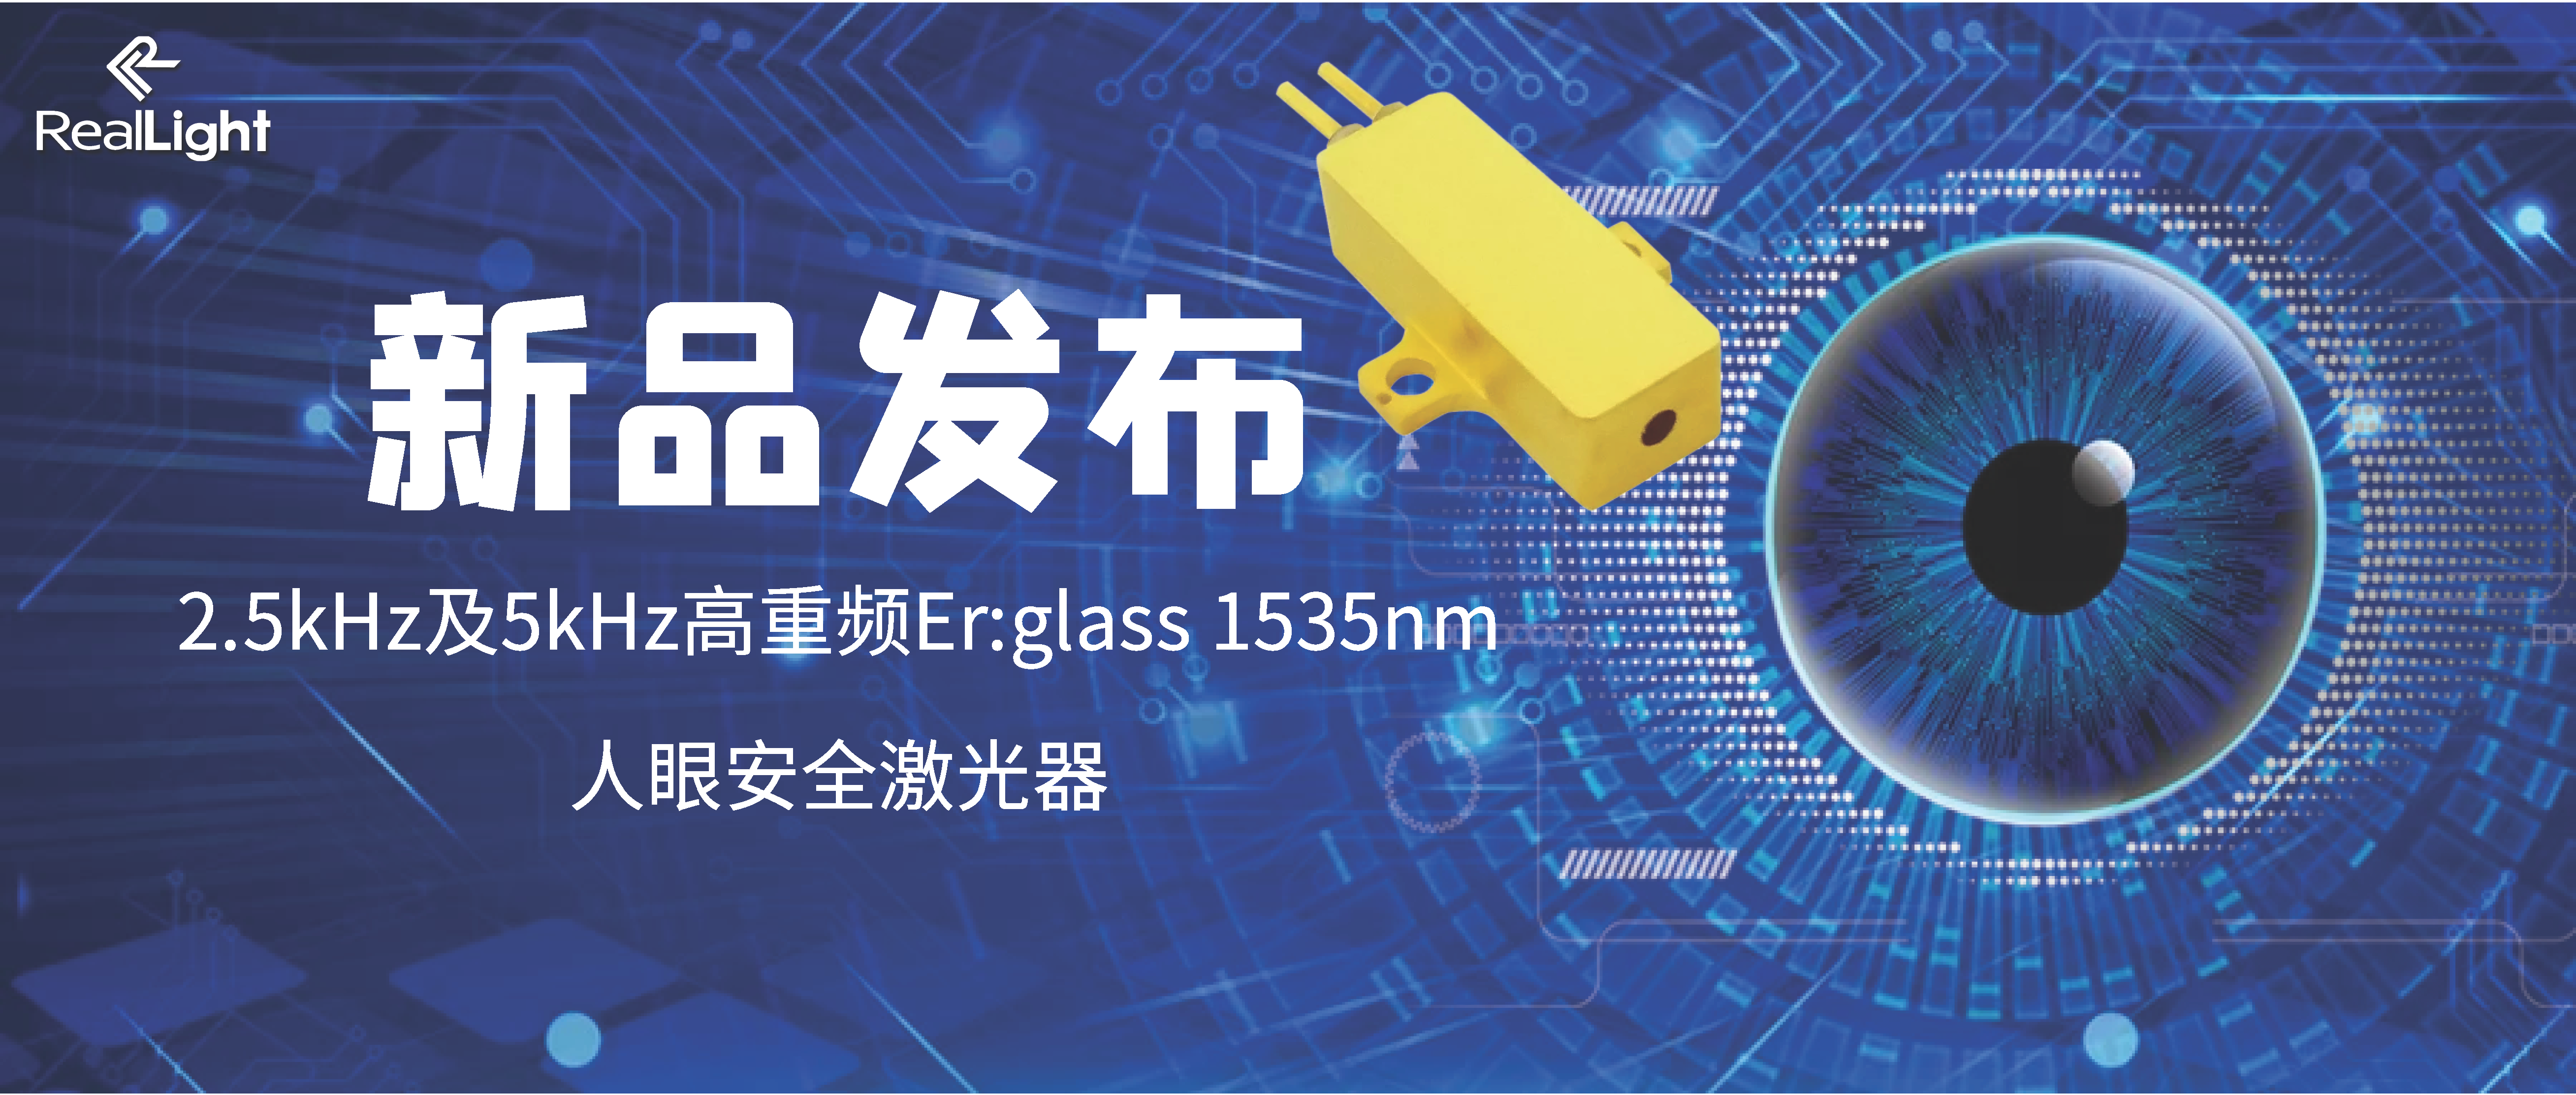 新品发布：2.5kHz及5kHz高重频Er:glass 1535nm人眼安全激光器